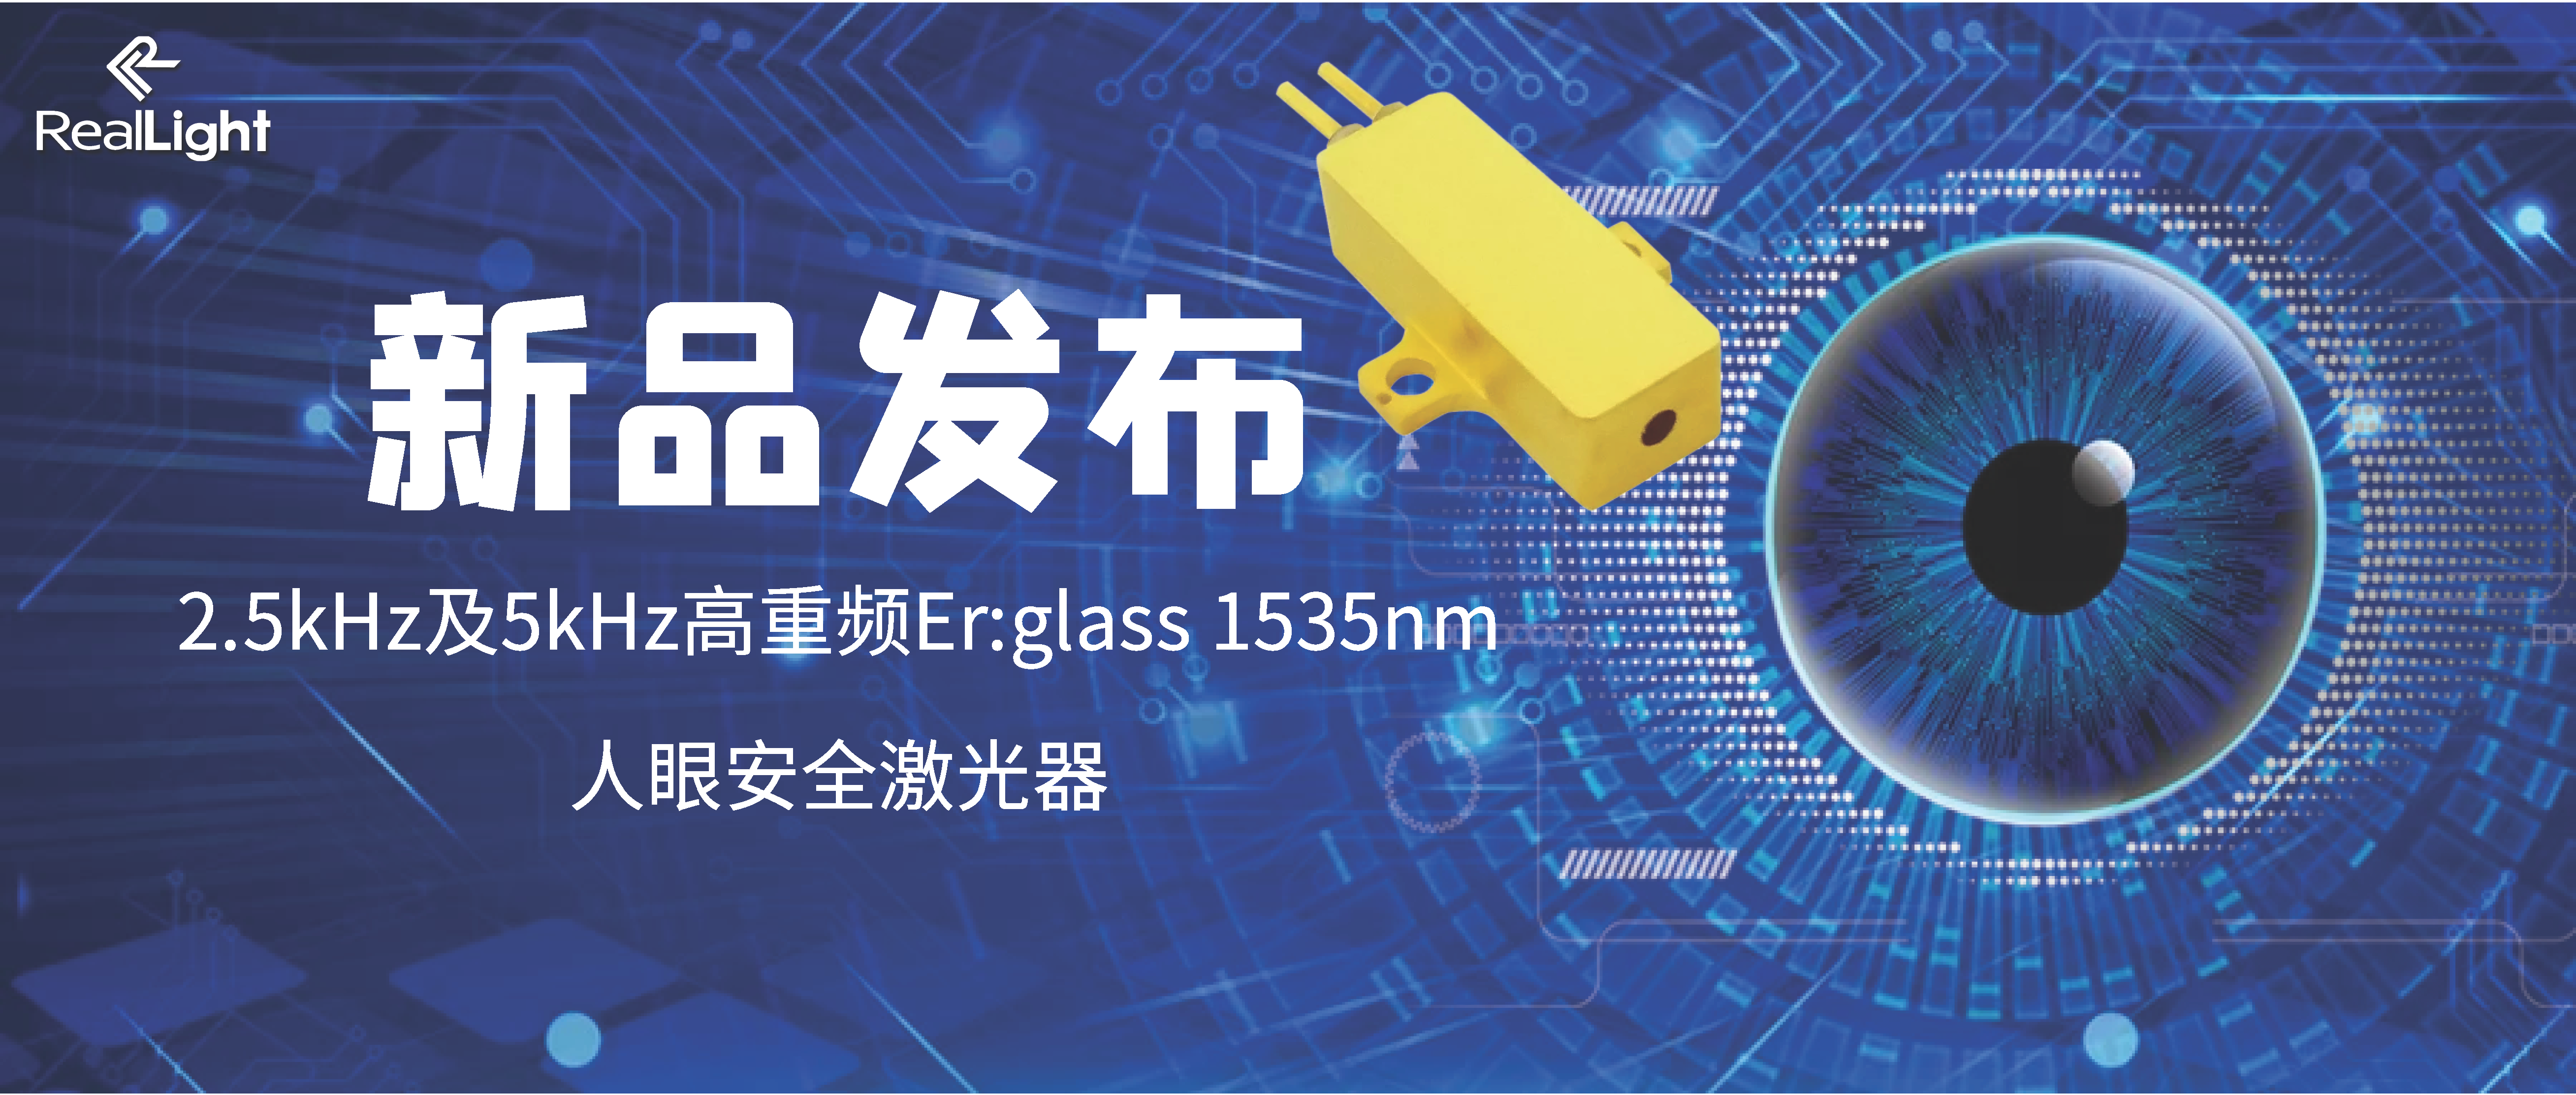 新品发布：2.5kHz及5kHz高重频Er:glass 1535nm人眼安全激光器